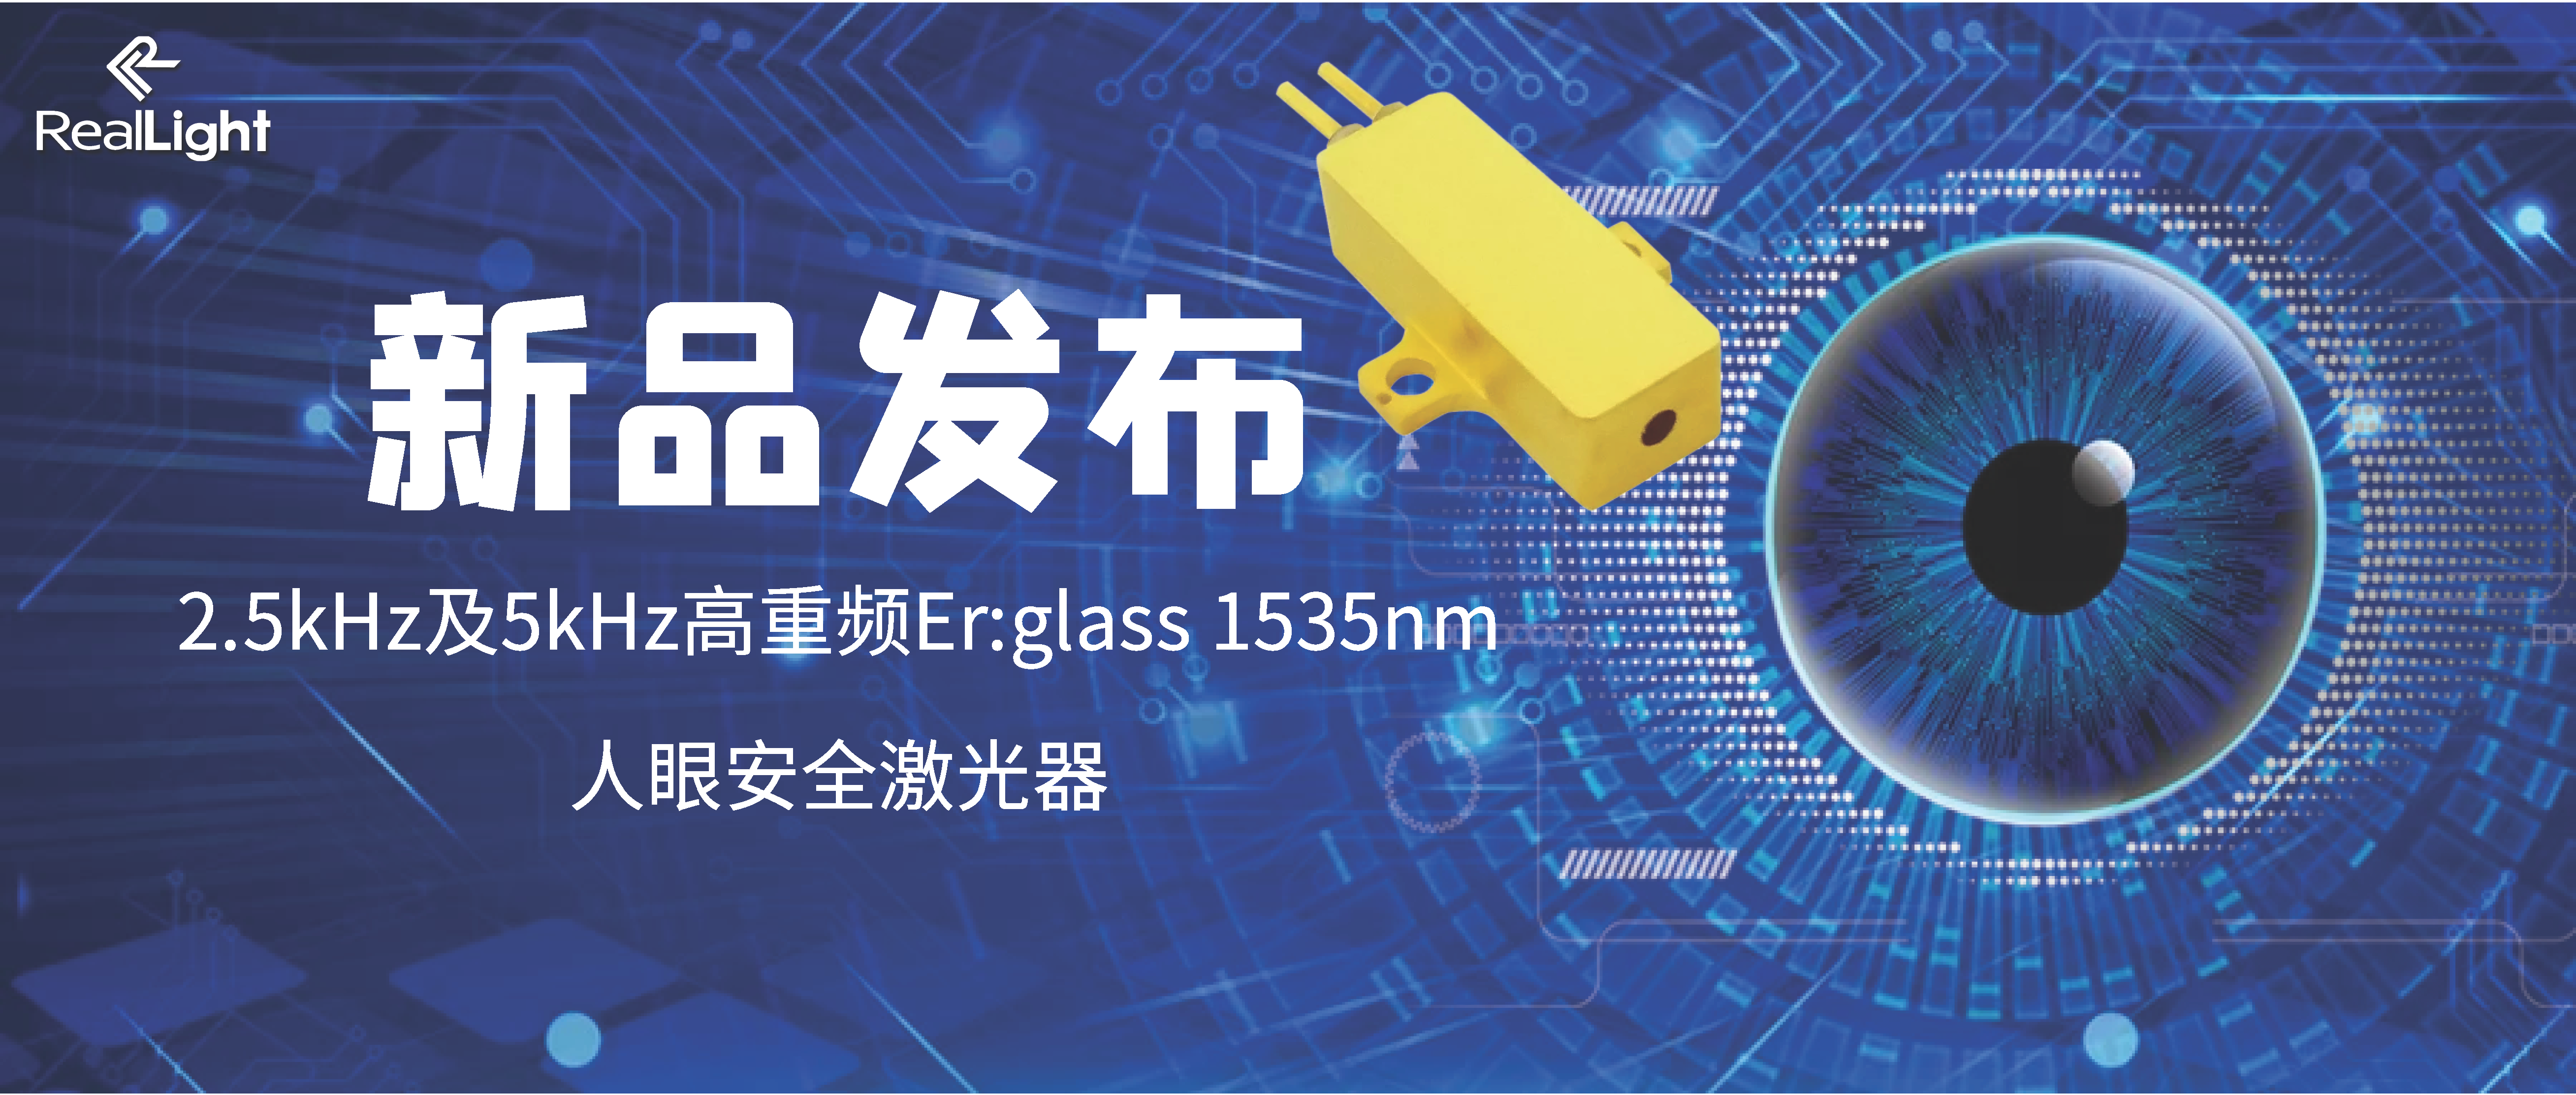 新品发布：2.5kHz及5kHz高重频Er:glass 1535nm人眼安全激光器